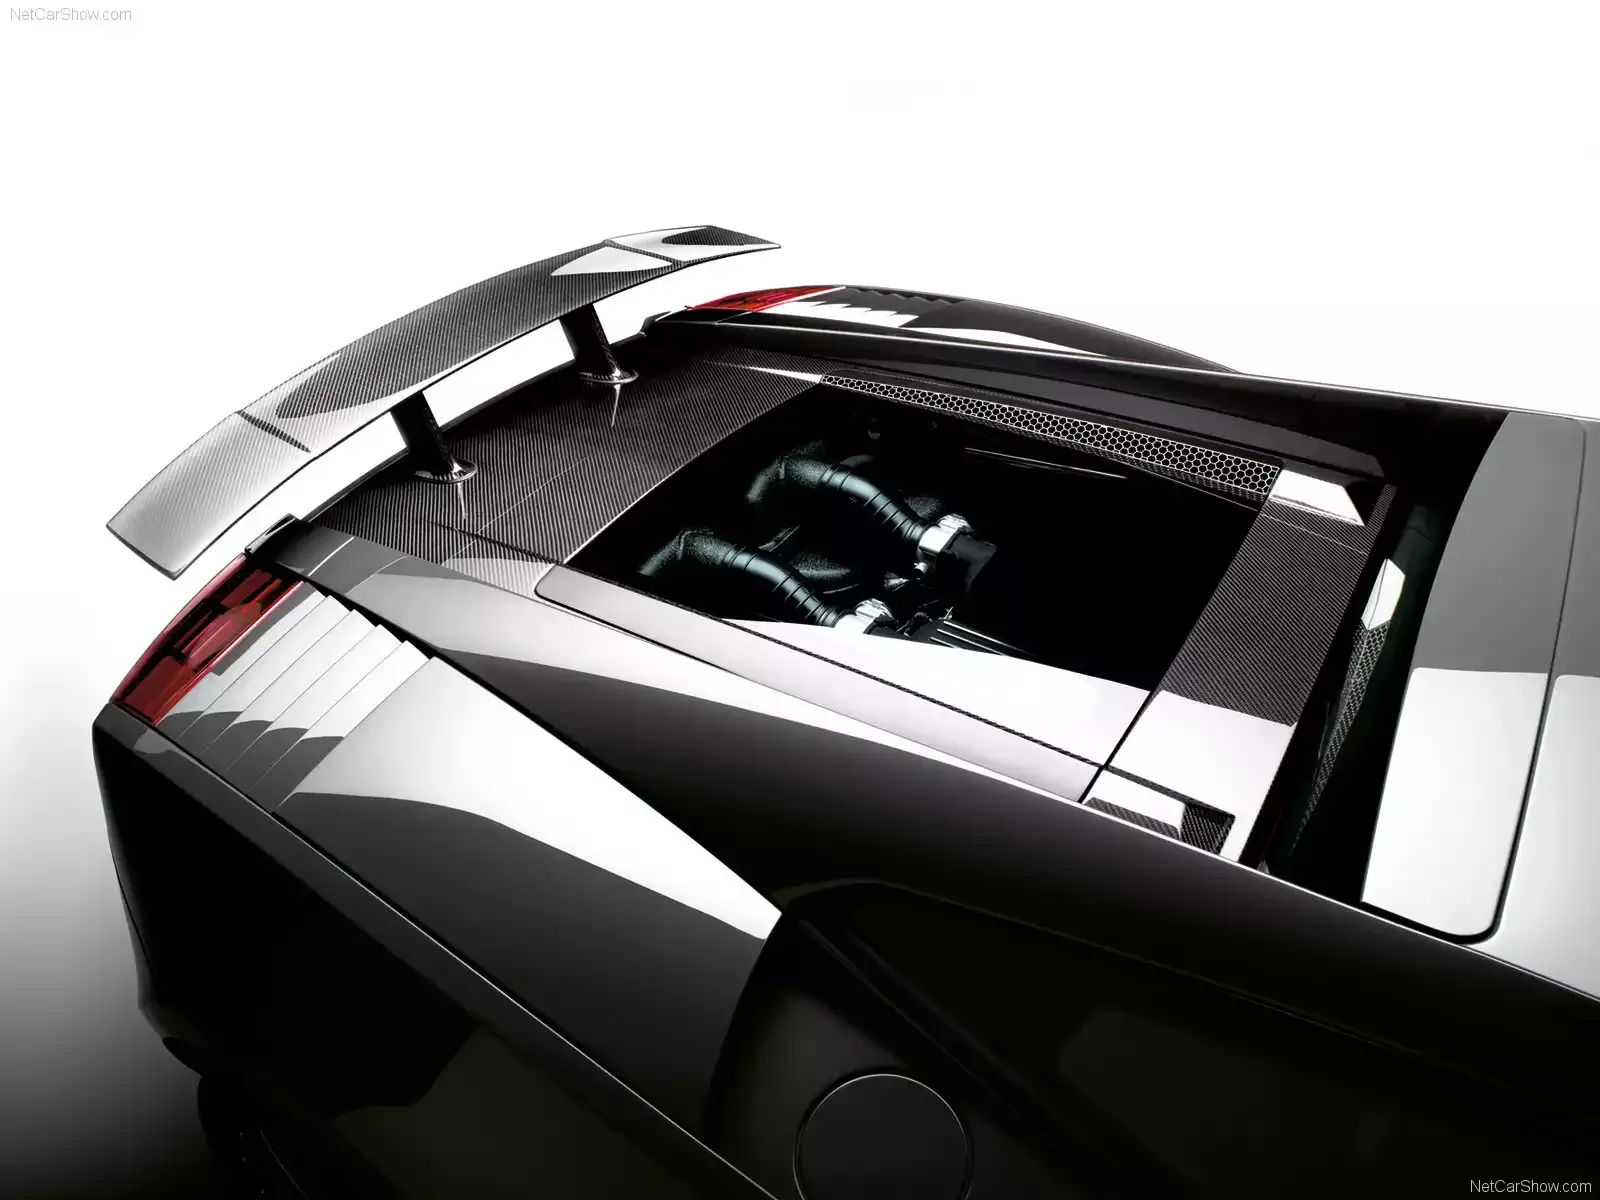 Hình ảnh siêu xe Lamborghini Gallardo Superleggera 2008 & nội ngoại thất